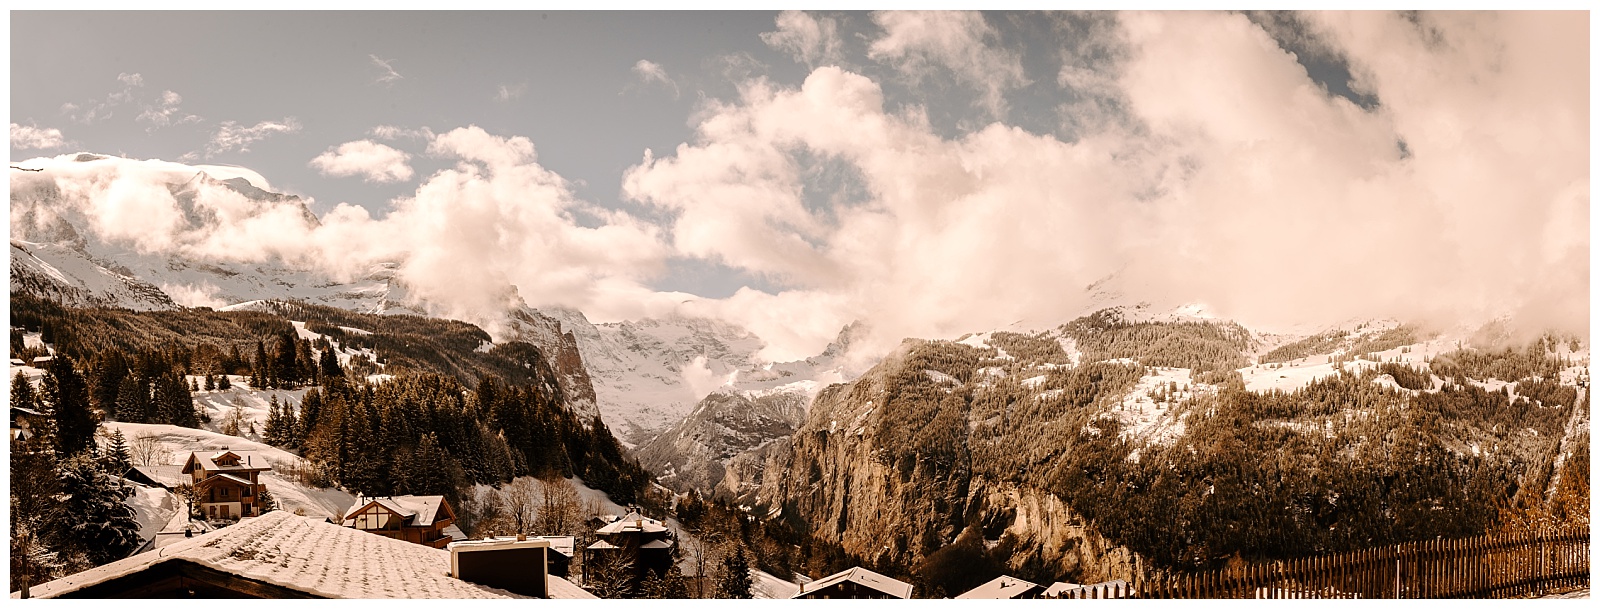 Grindelwald Travel Guide